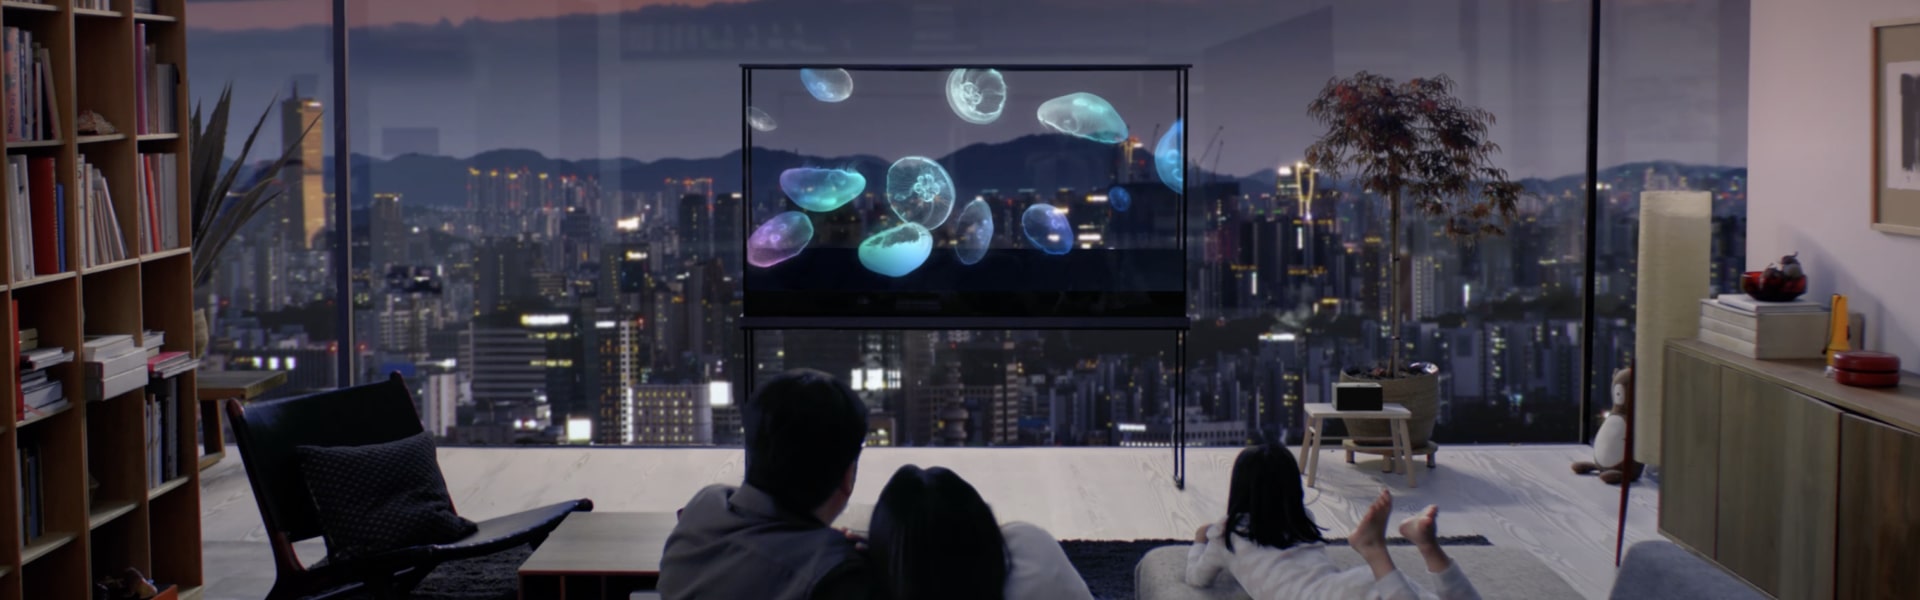 Một gia đình đang tận hưởng chiếc LG Oled T với con sứa nổi trên đó, trong khi cảnh quan thành phố tỏa sáng qua màn hình trong suốt.